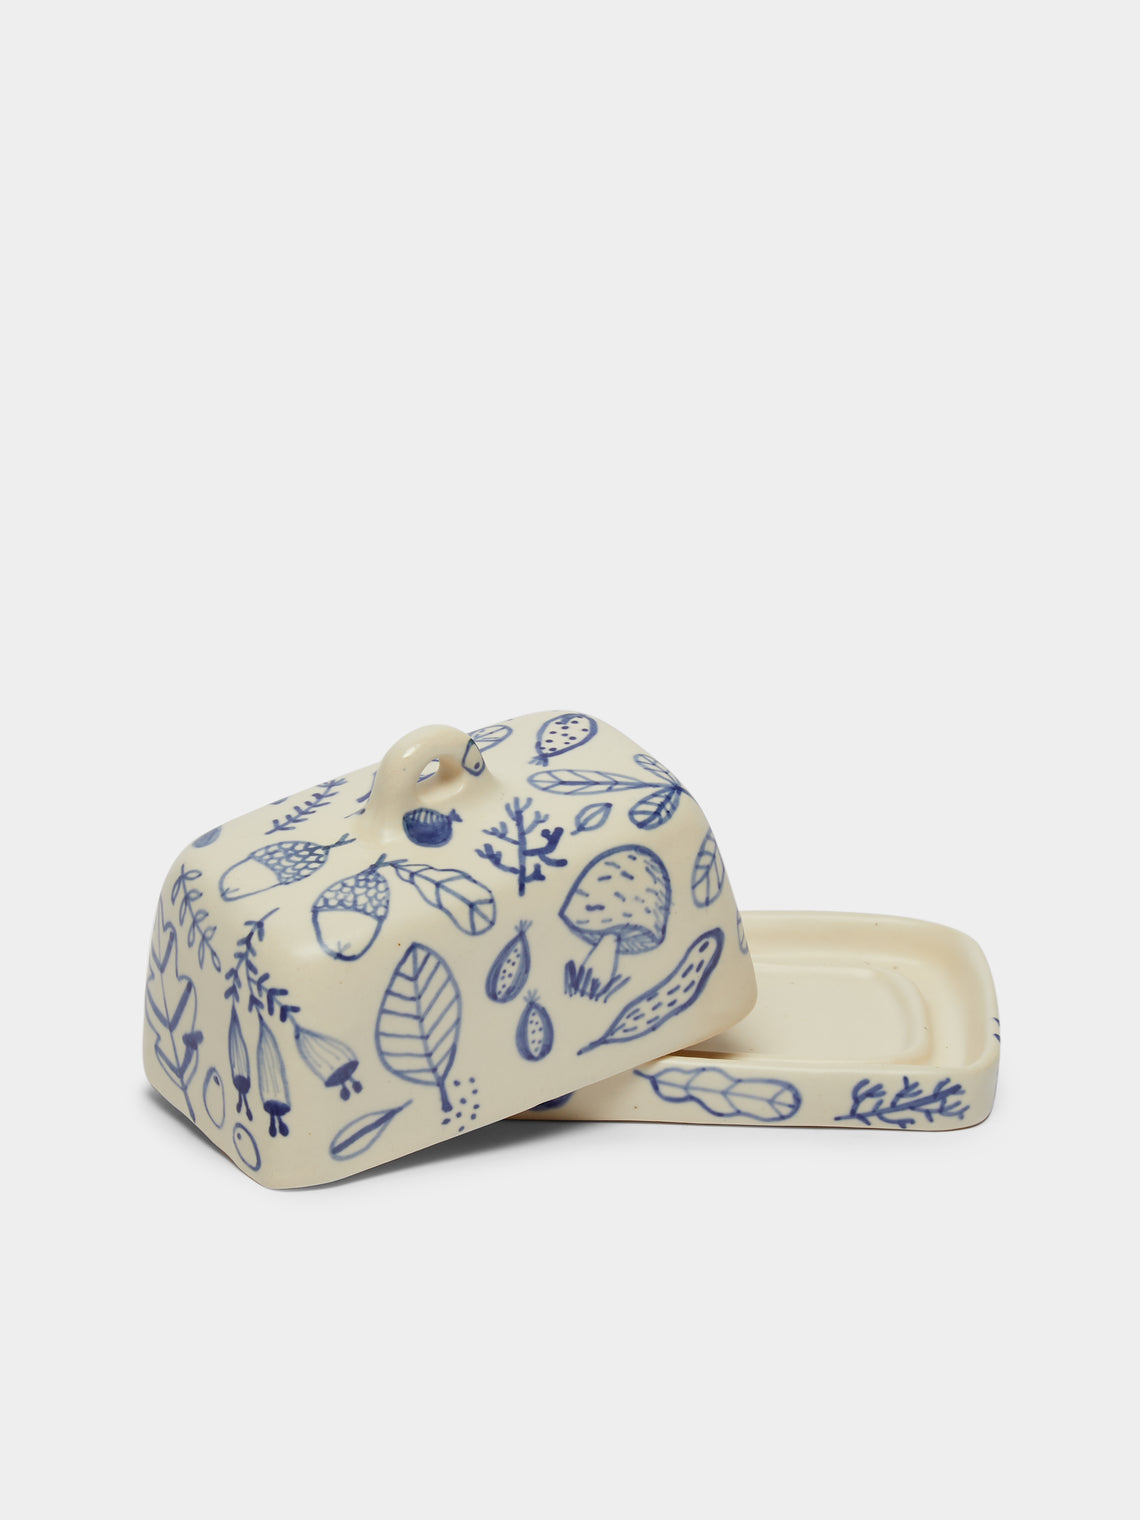 Azul Patagonia - Mushroom Hand-Painted Ceramic Butter Dish -  - ABASK